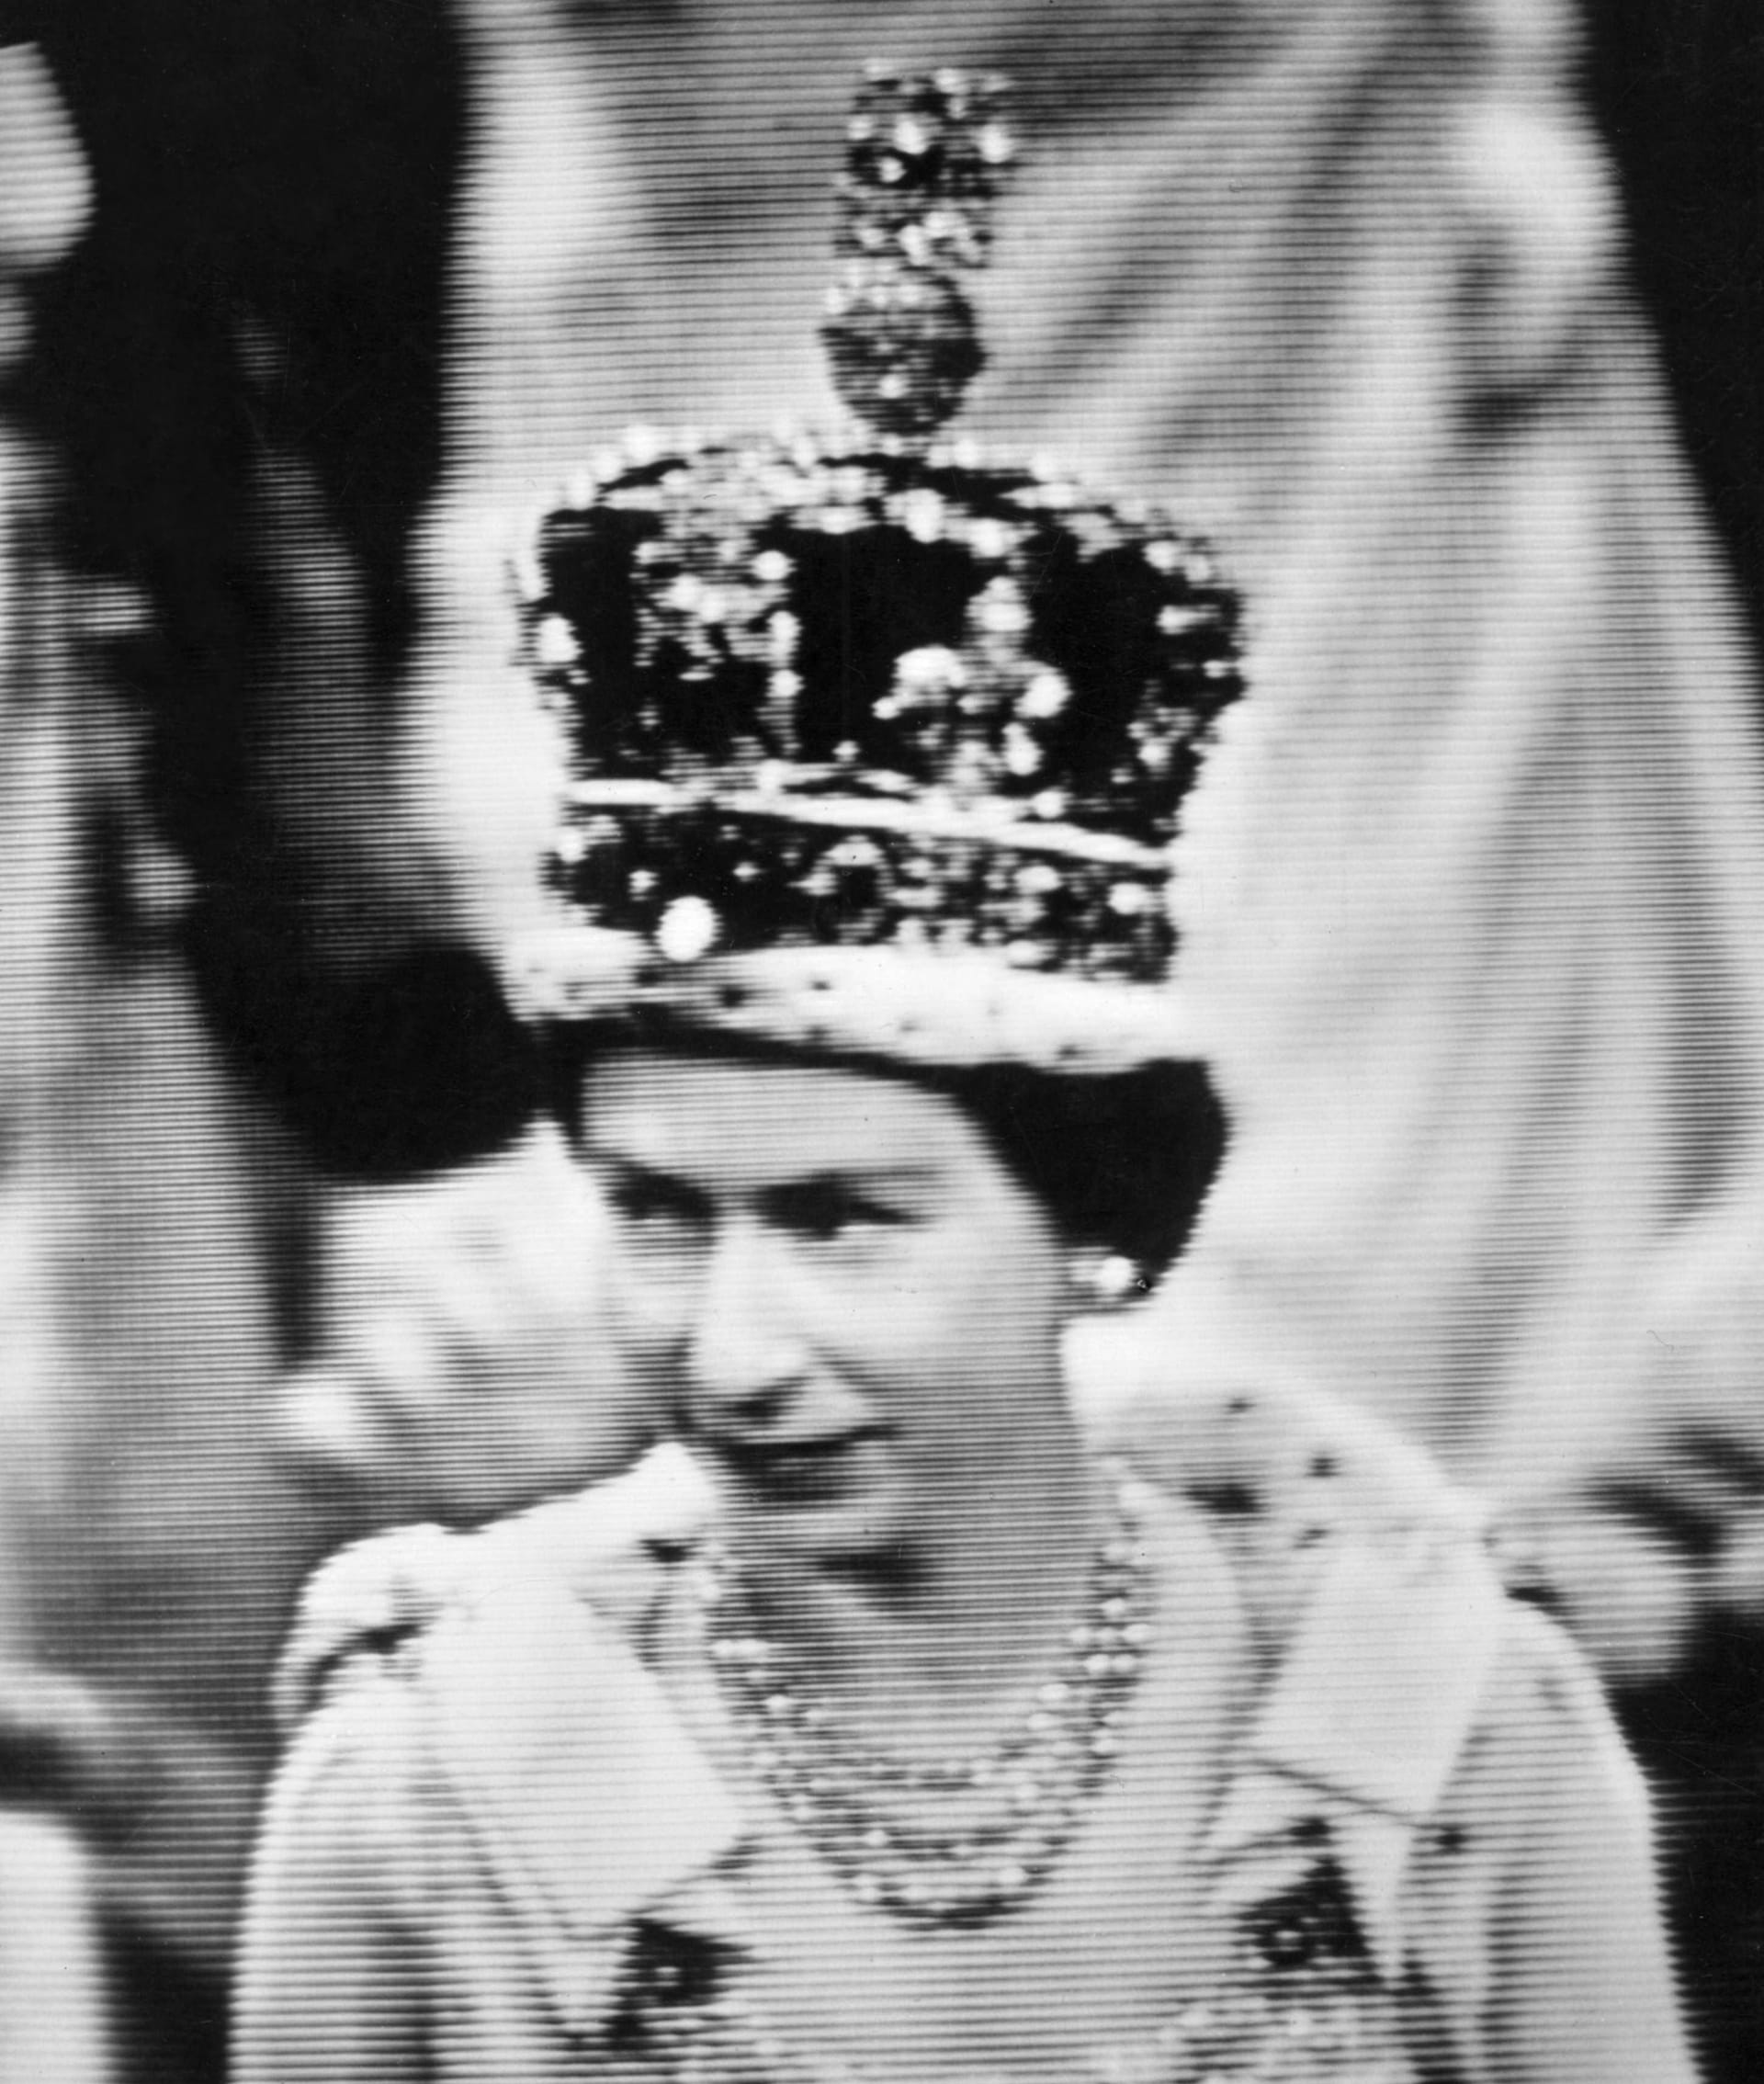 1958, Parlamentseröffnung: Die Queen mit der Imperial State Crown